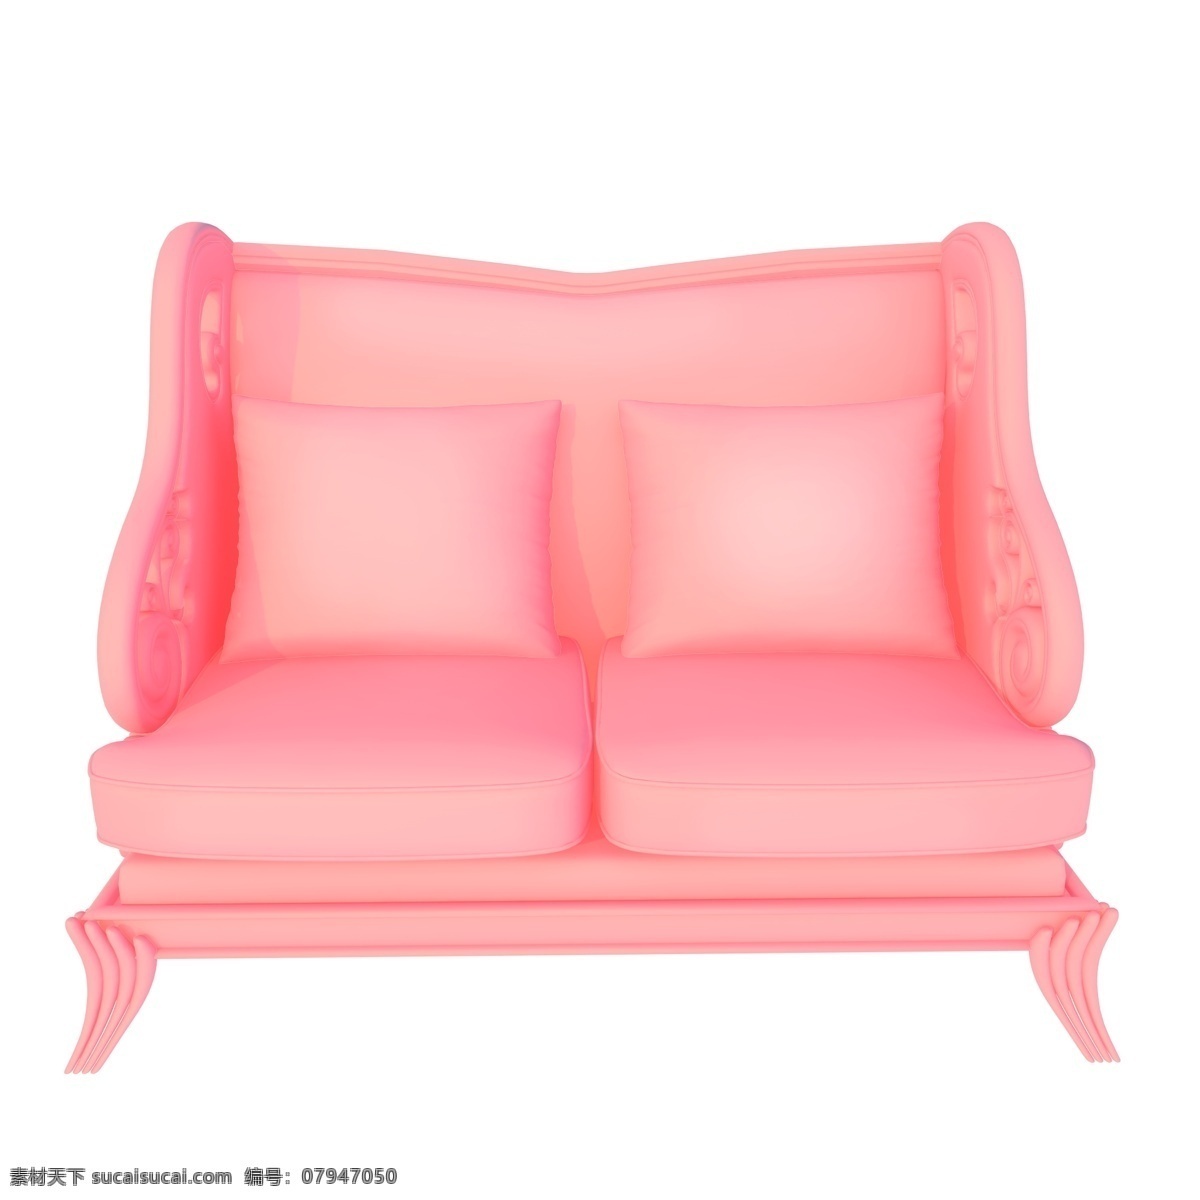 复古双人沙发 软座 沙发 沙发椅 粉色立体家居